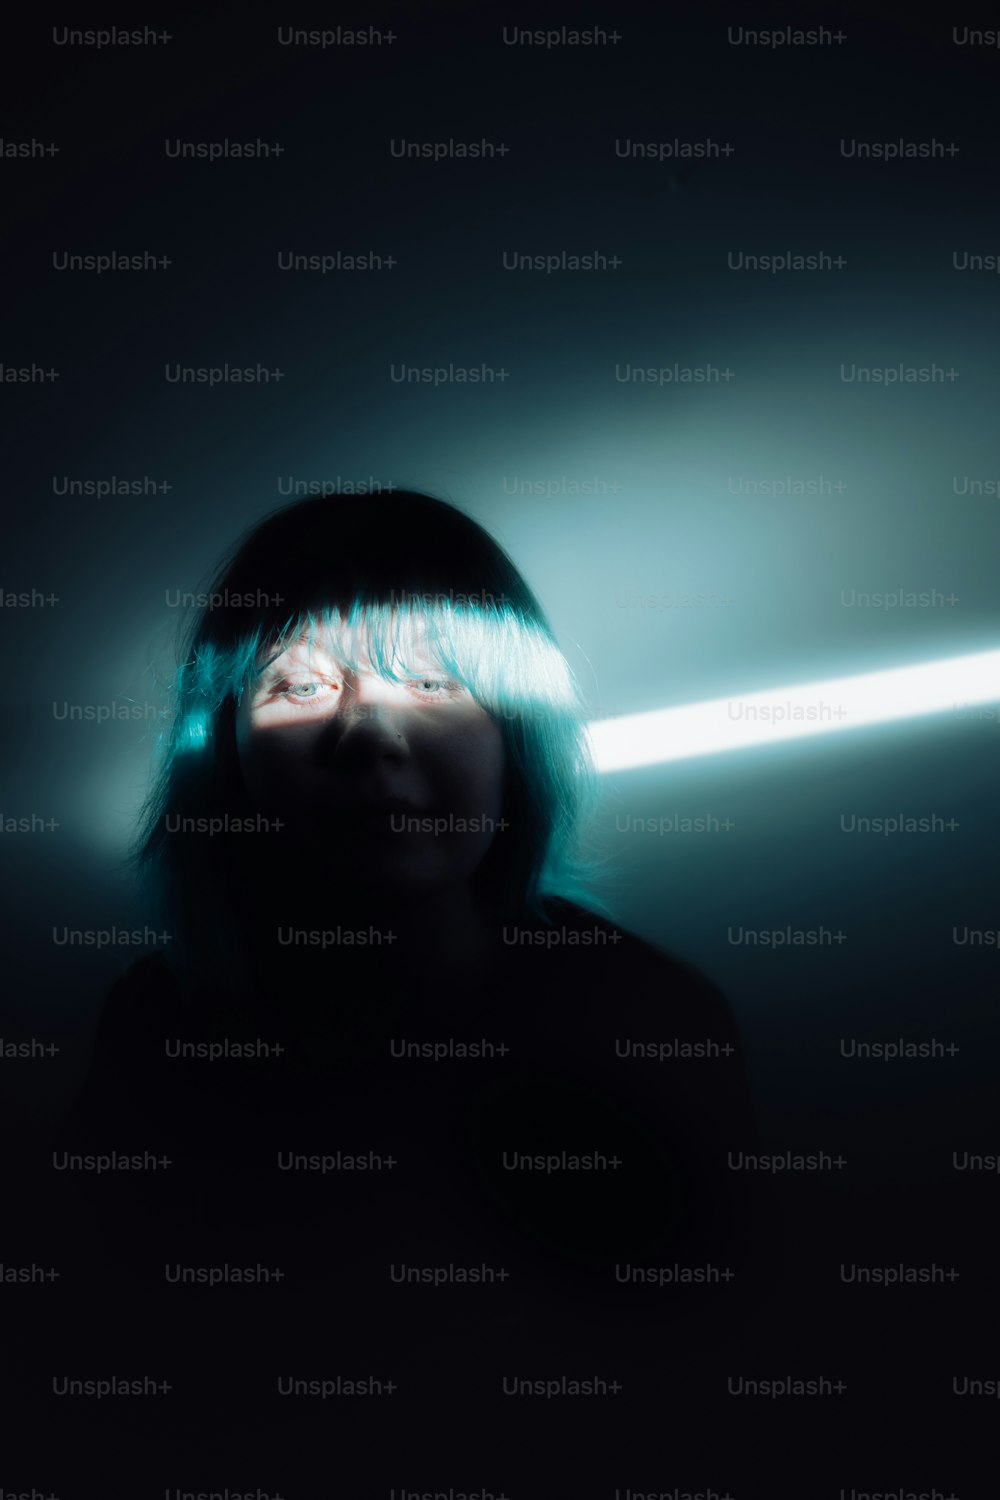 Una mujer en una habitación oscura con una luz entrando por sus ojos